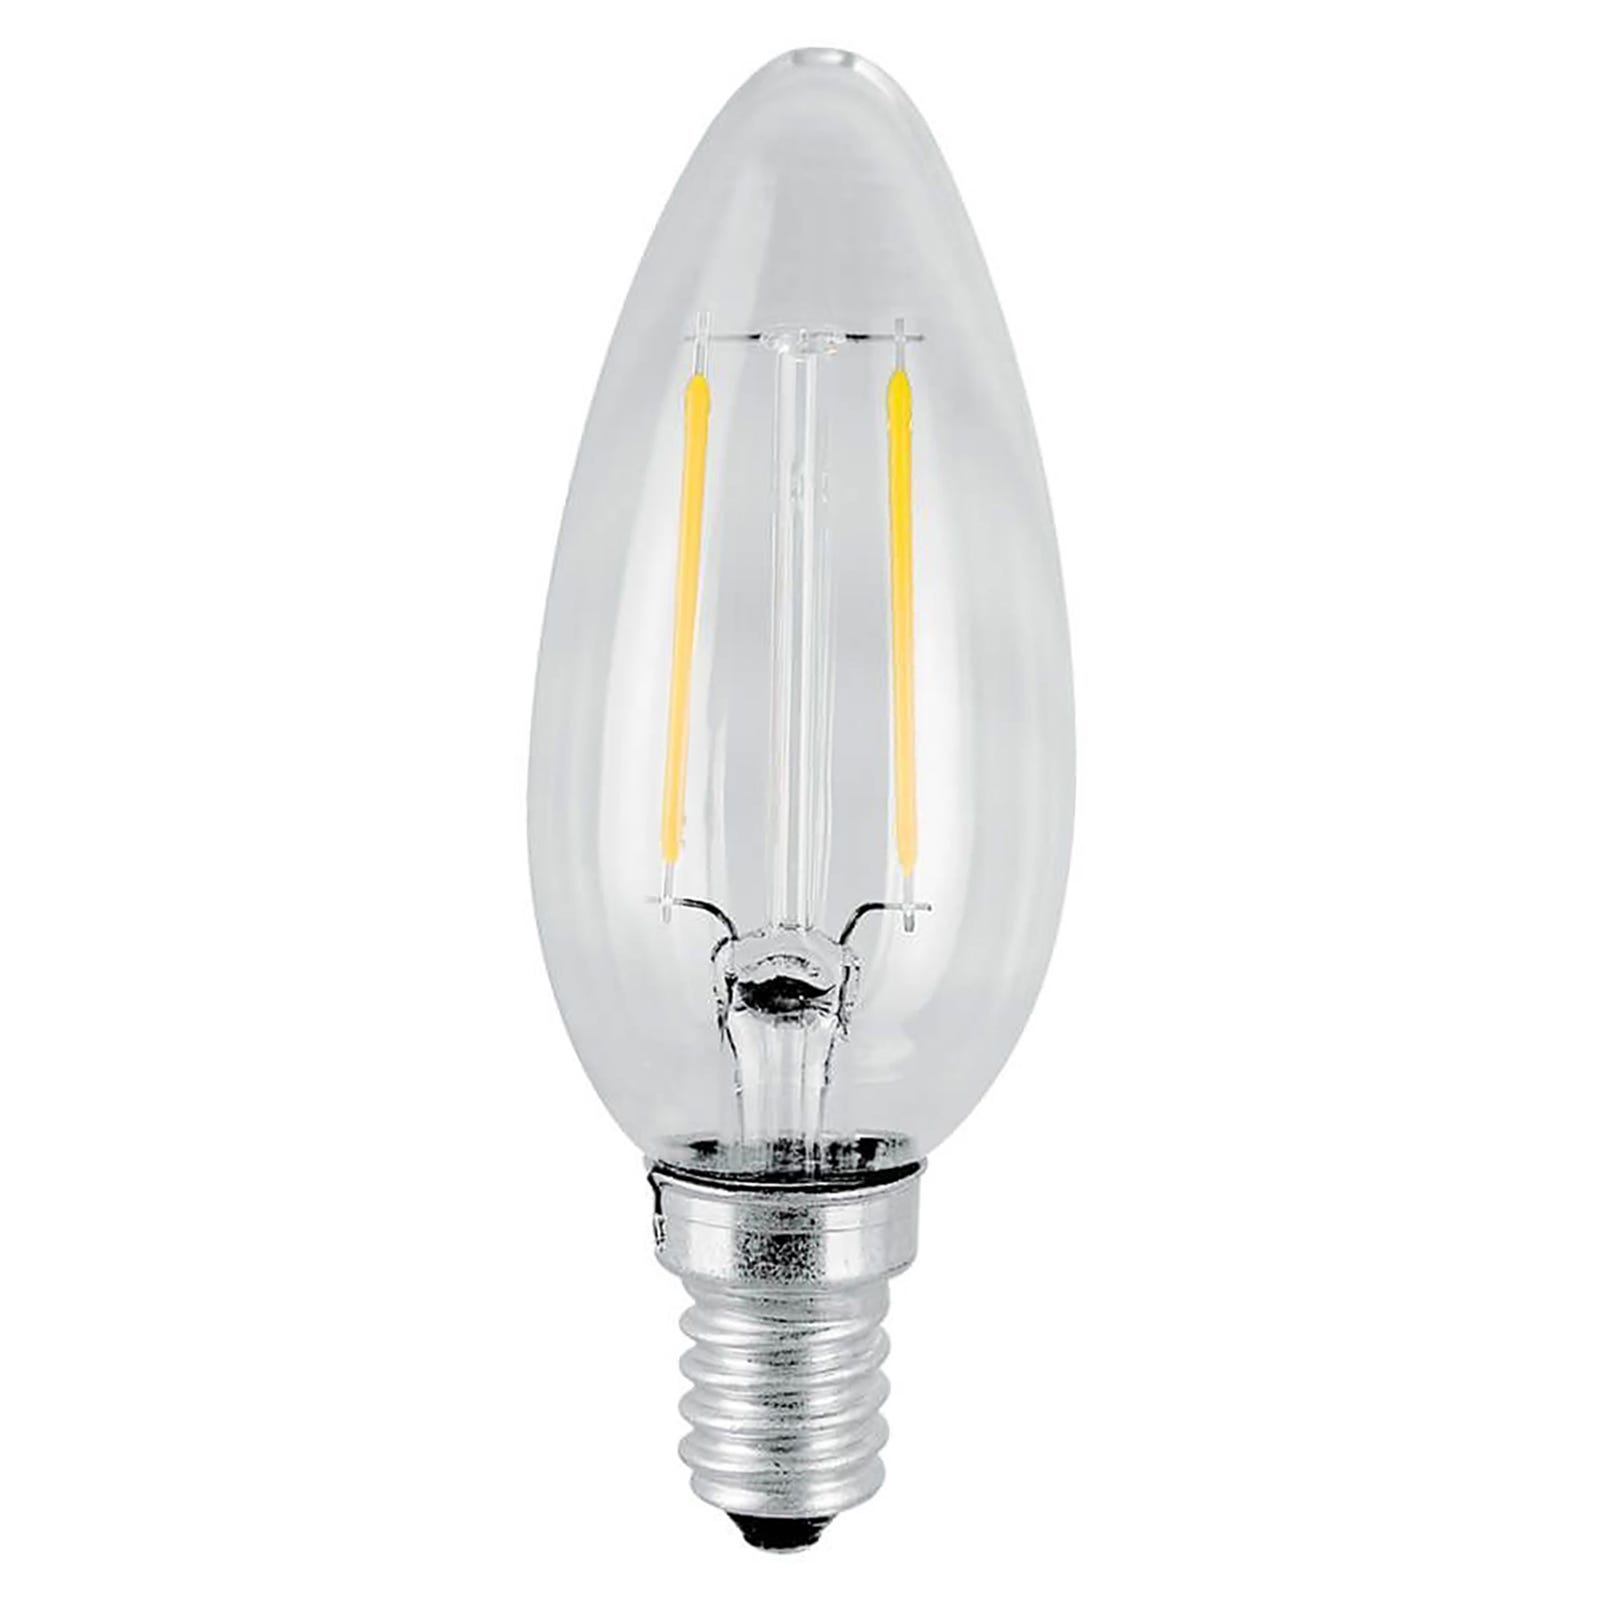 Lampadina filo LED candela attacco piccolo E14 4W vetro trasparente resa  40W luce calda 3000K 470 lumen 230V